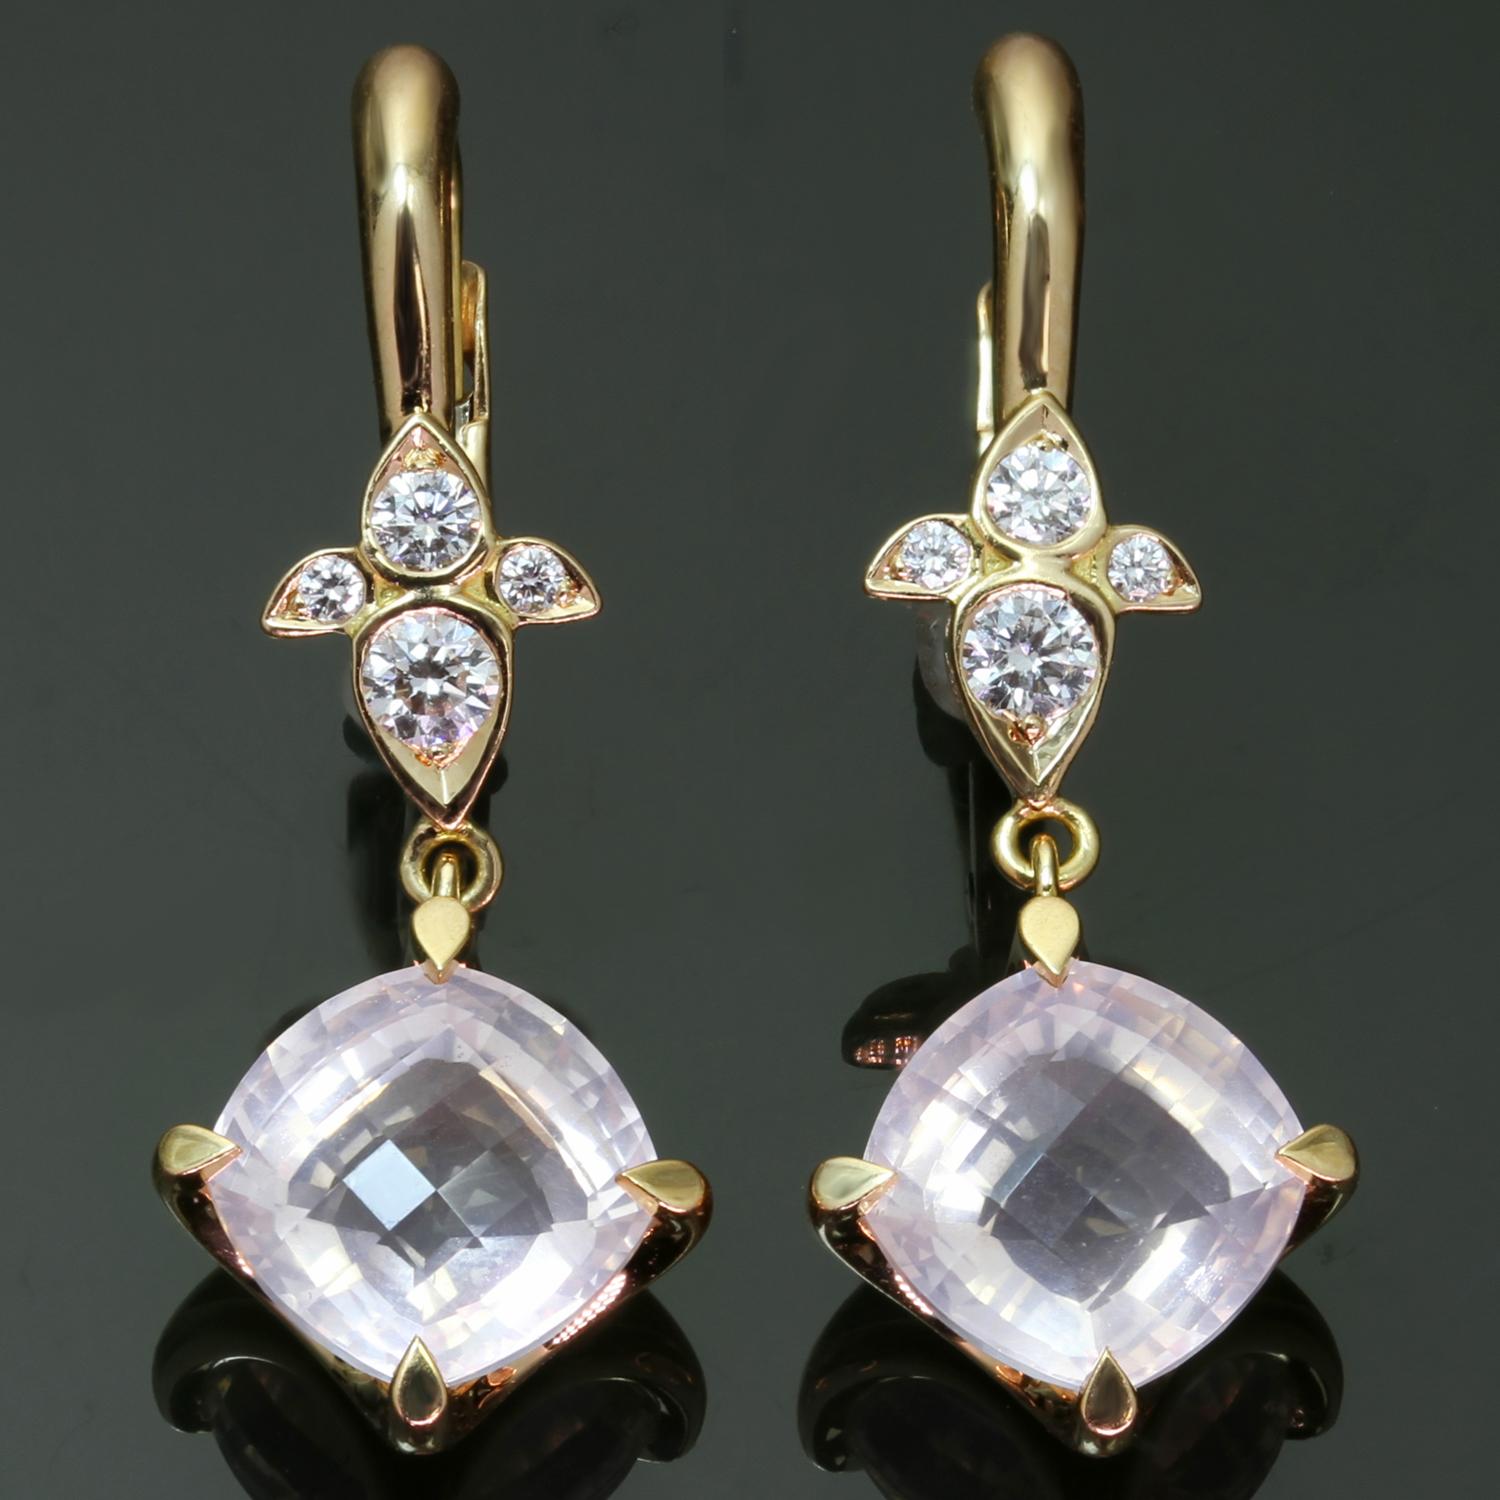 Ces fabuleuses boucles d'oreilles pendantes, issues de l'élégante collection Mysterieuse de Cartier, sont réalisées en or rose 18 carats et serties de quartz rose facetté et rehaussées de diamants ronds D-E-F VVS1-VVS2 taille brillant. Fabriqué en